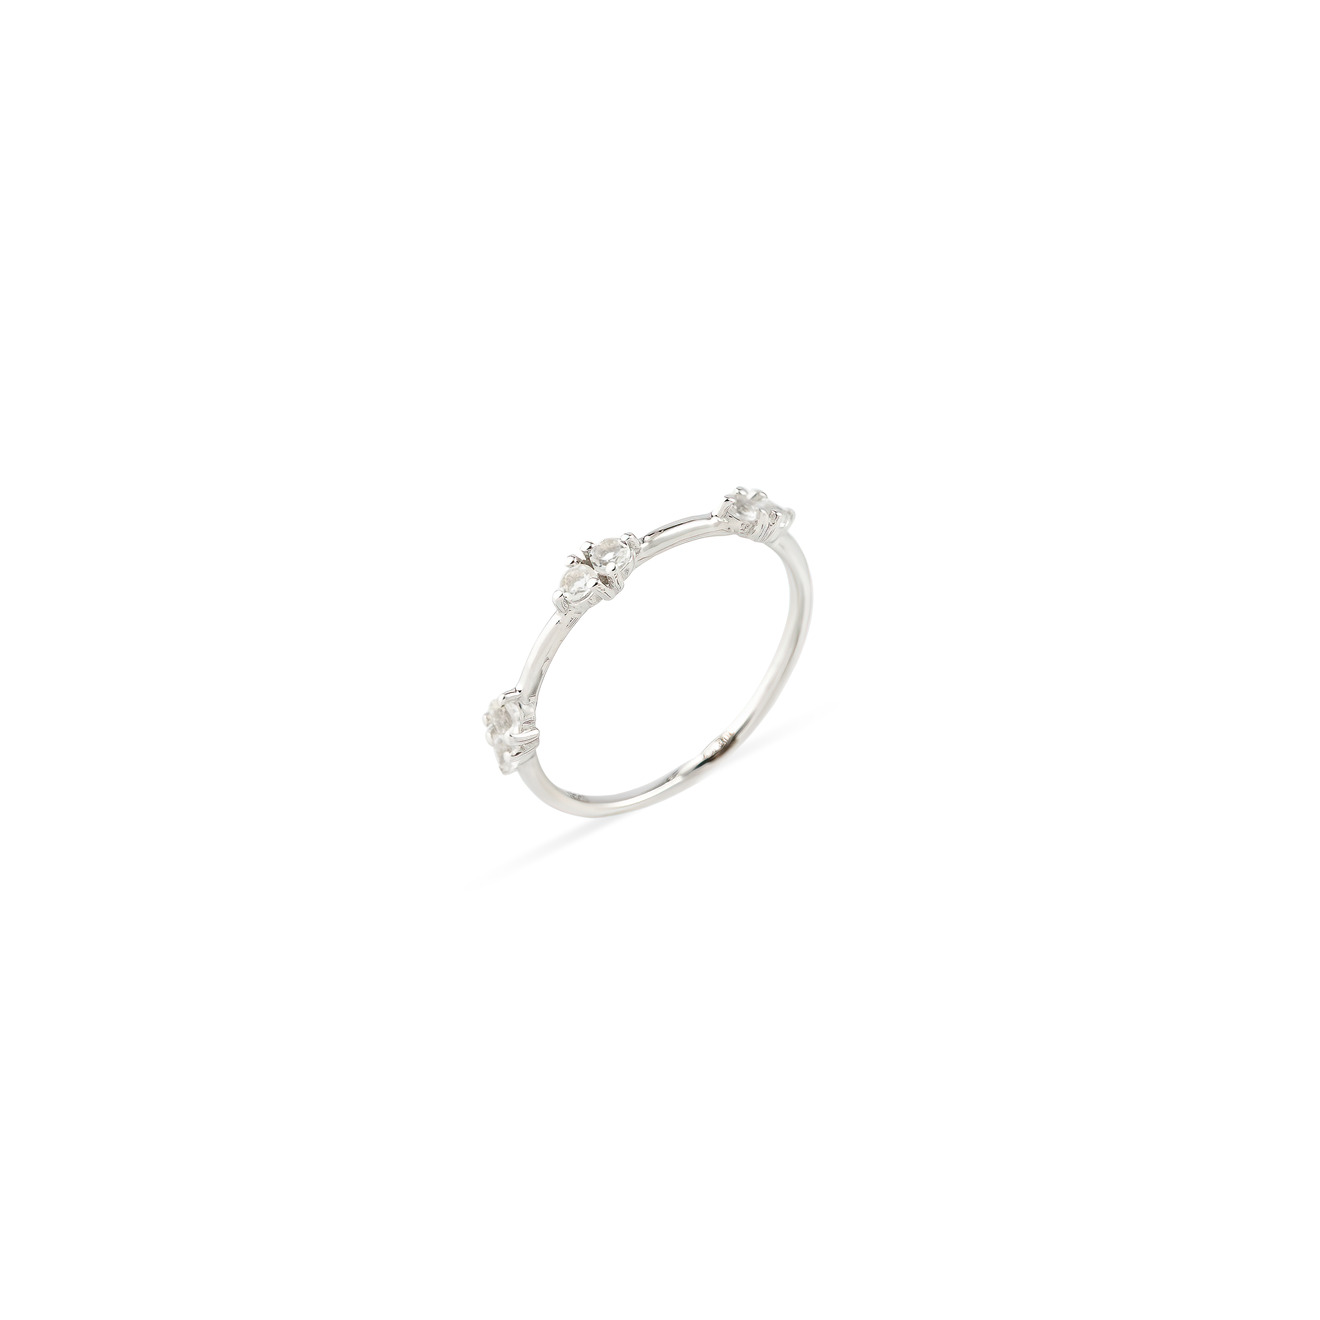 Wisteria Gems Серебряное кольцо тонкое со вставками из круглого горного хрусталя wisteria gems серебряные серьги из двух каплевидных камней горного хрусталя и дымчатого кварца